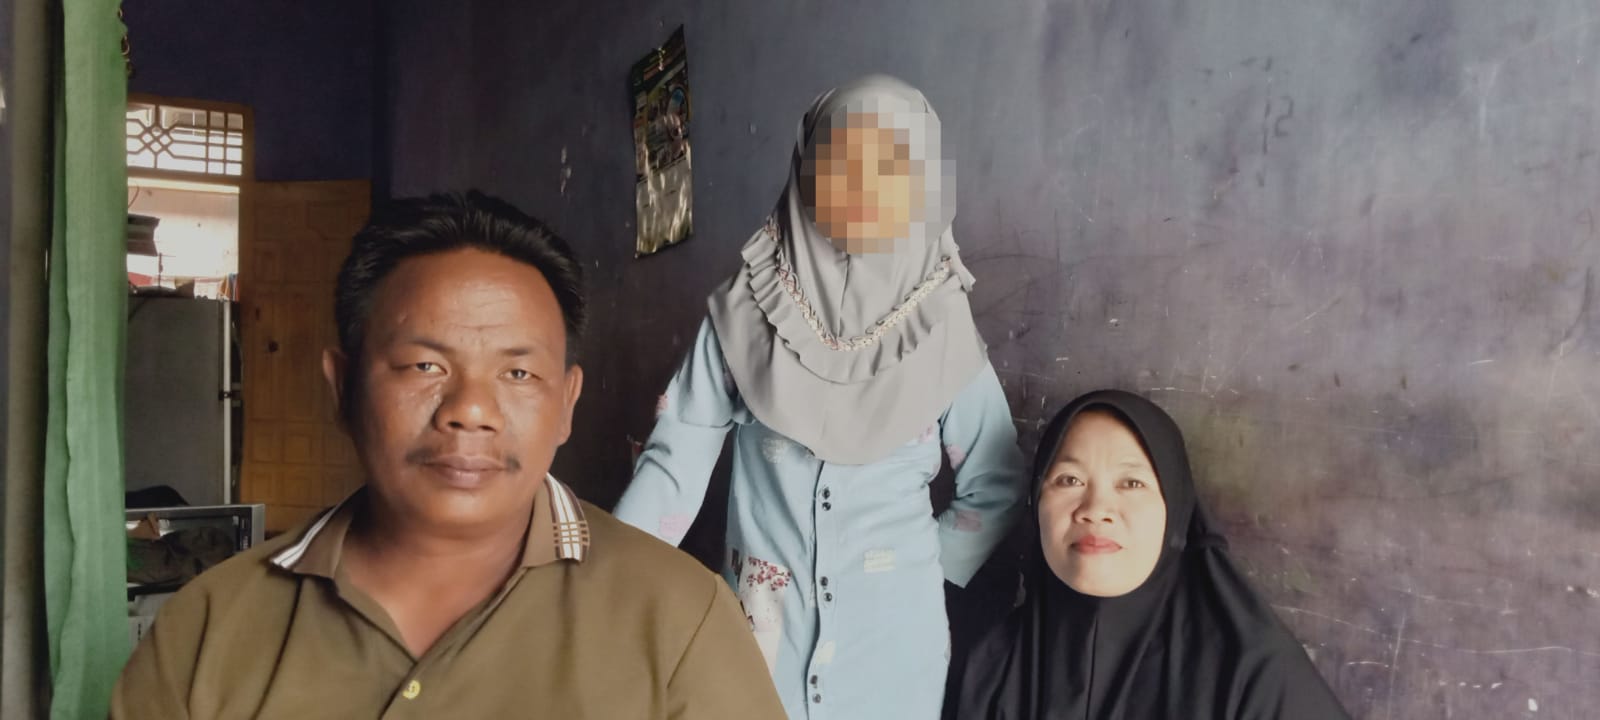 Kasus Penganiayaan Anak Dibawah Umur di Lampura Mandek di Polres, Kata Kasat Res : Hukumannya Dibawah 5 Tahun